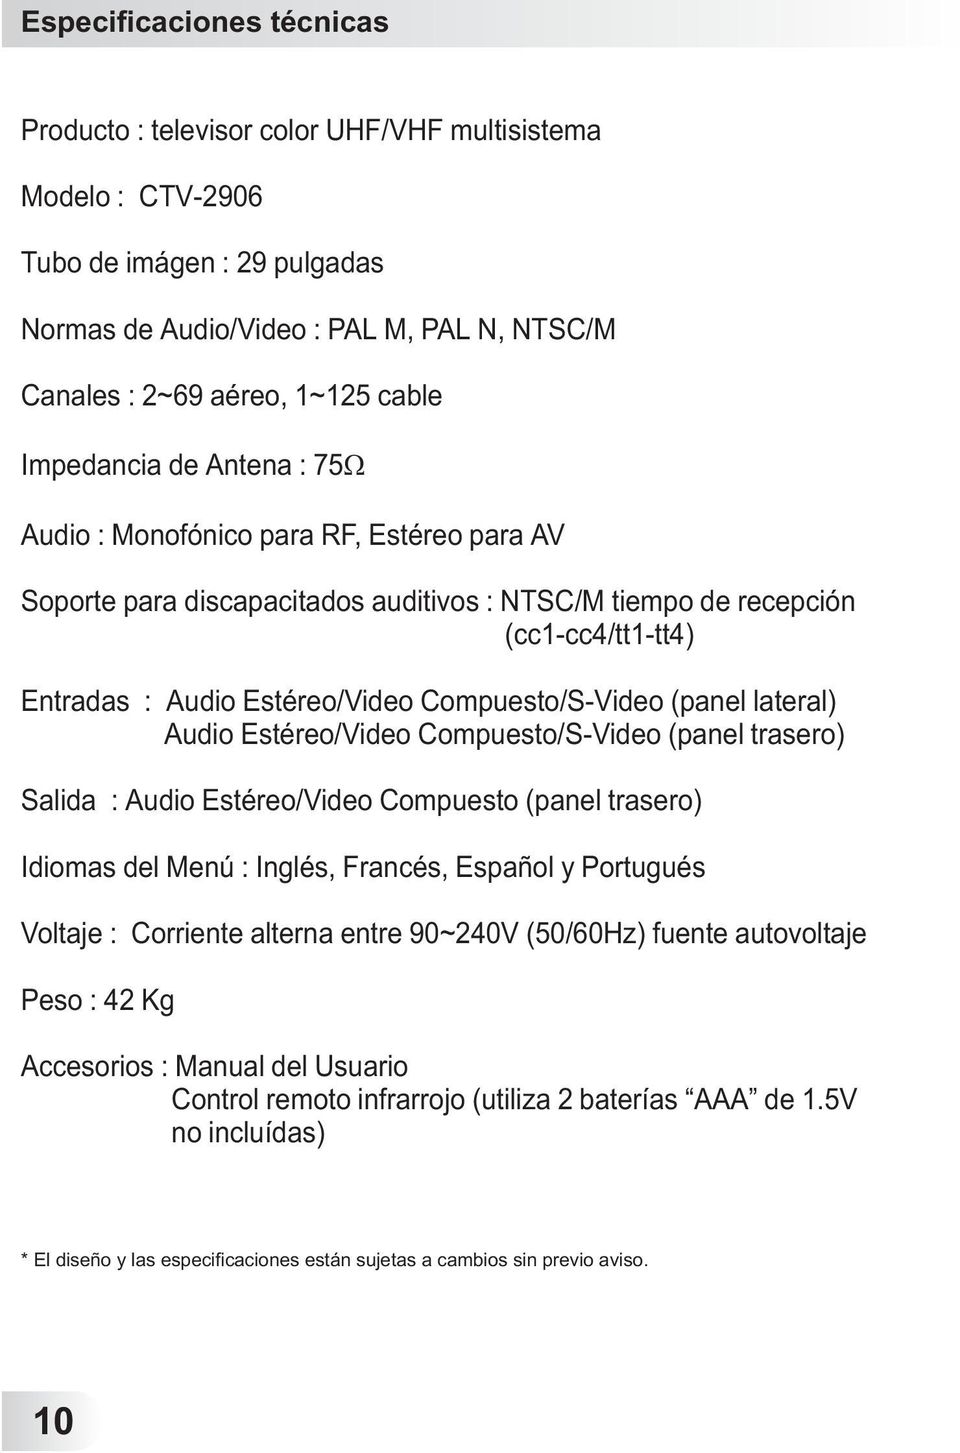 Compuesto/S-Video (panel lateral) Audio Estéreo/Video Compuesto/S-Video (panel trasero) Salida : Audio Estéreo/Video Compuesto (panel trasero) Idiomas del Menú : Inglés, Francés, Español y Portugués